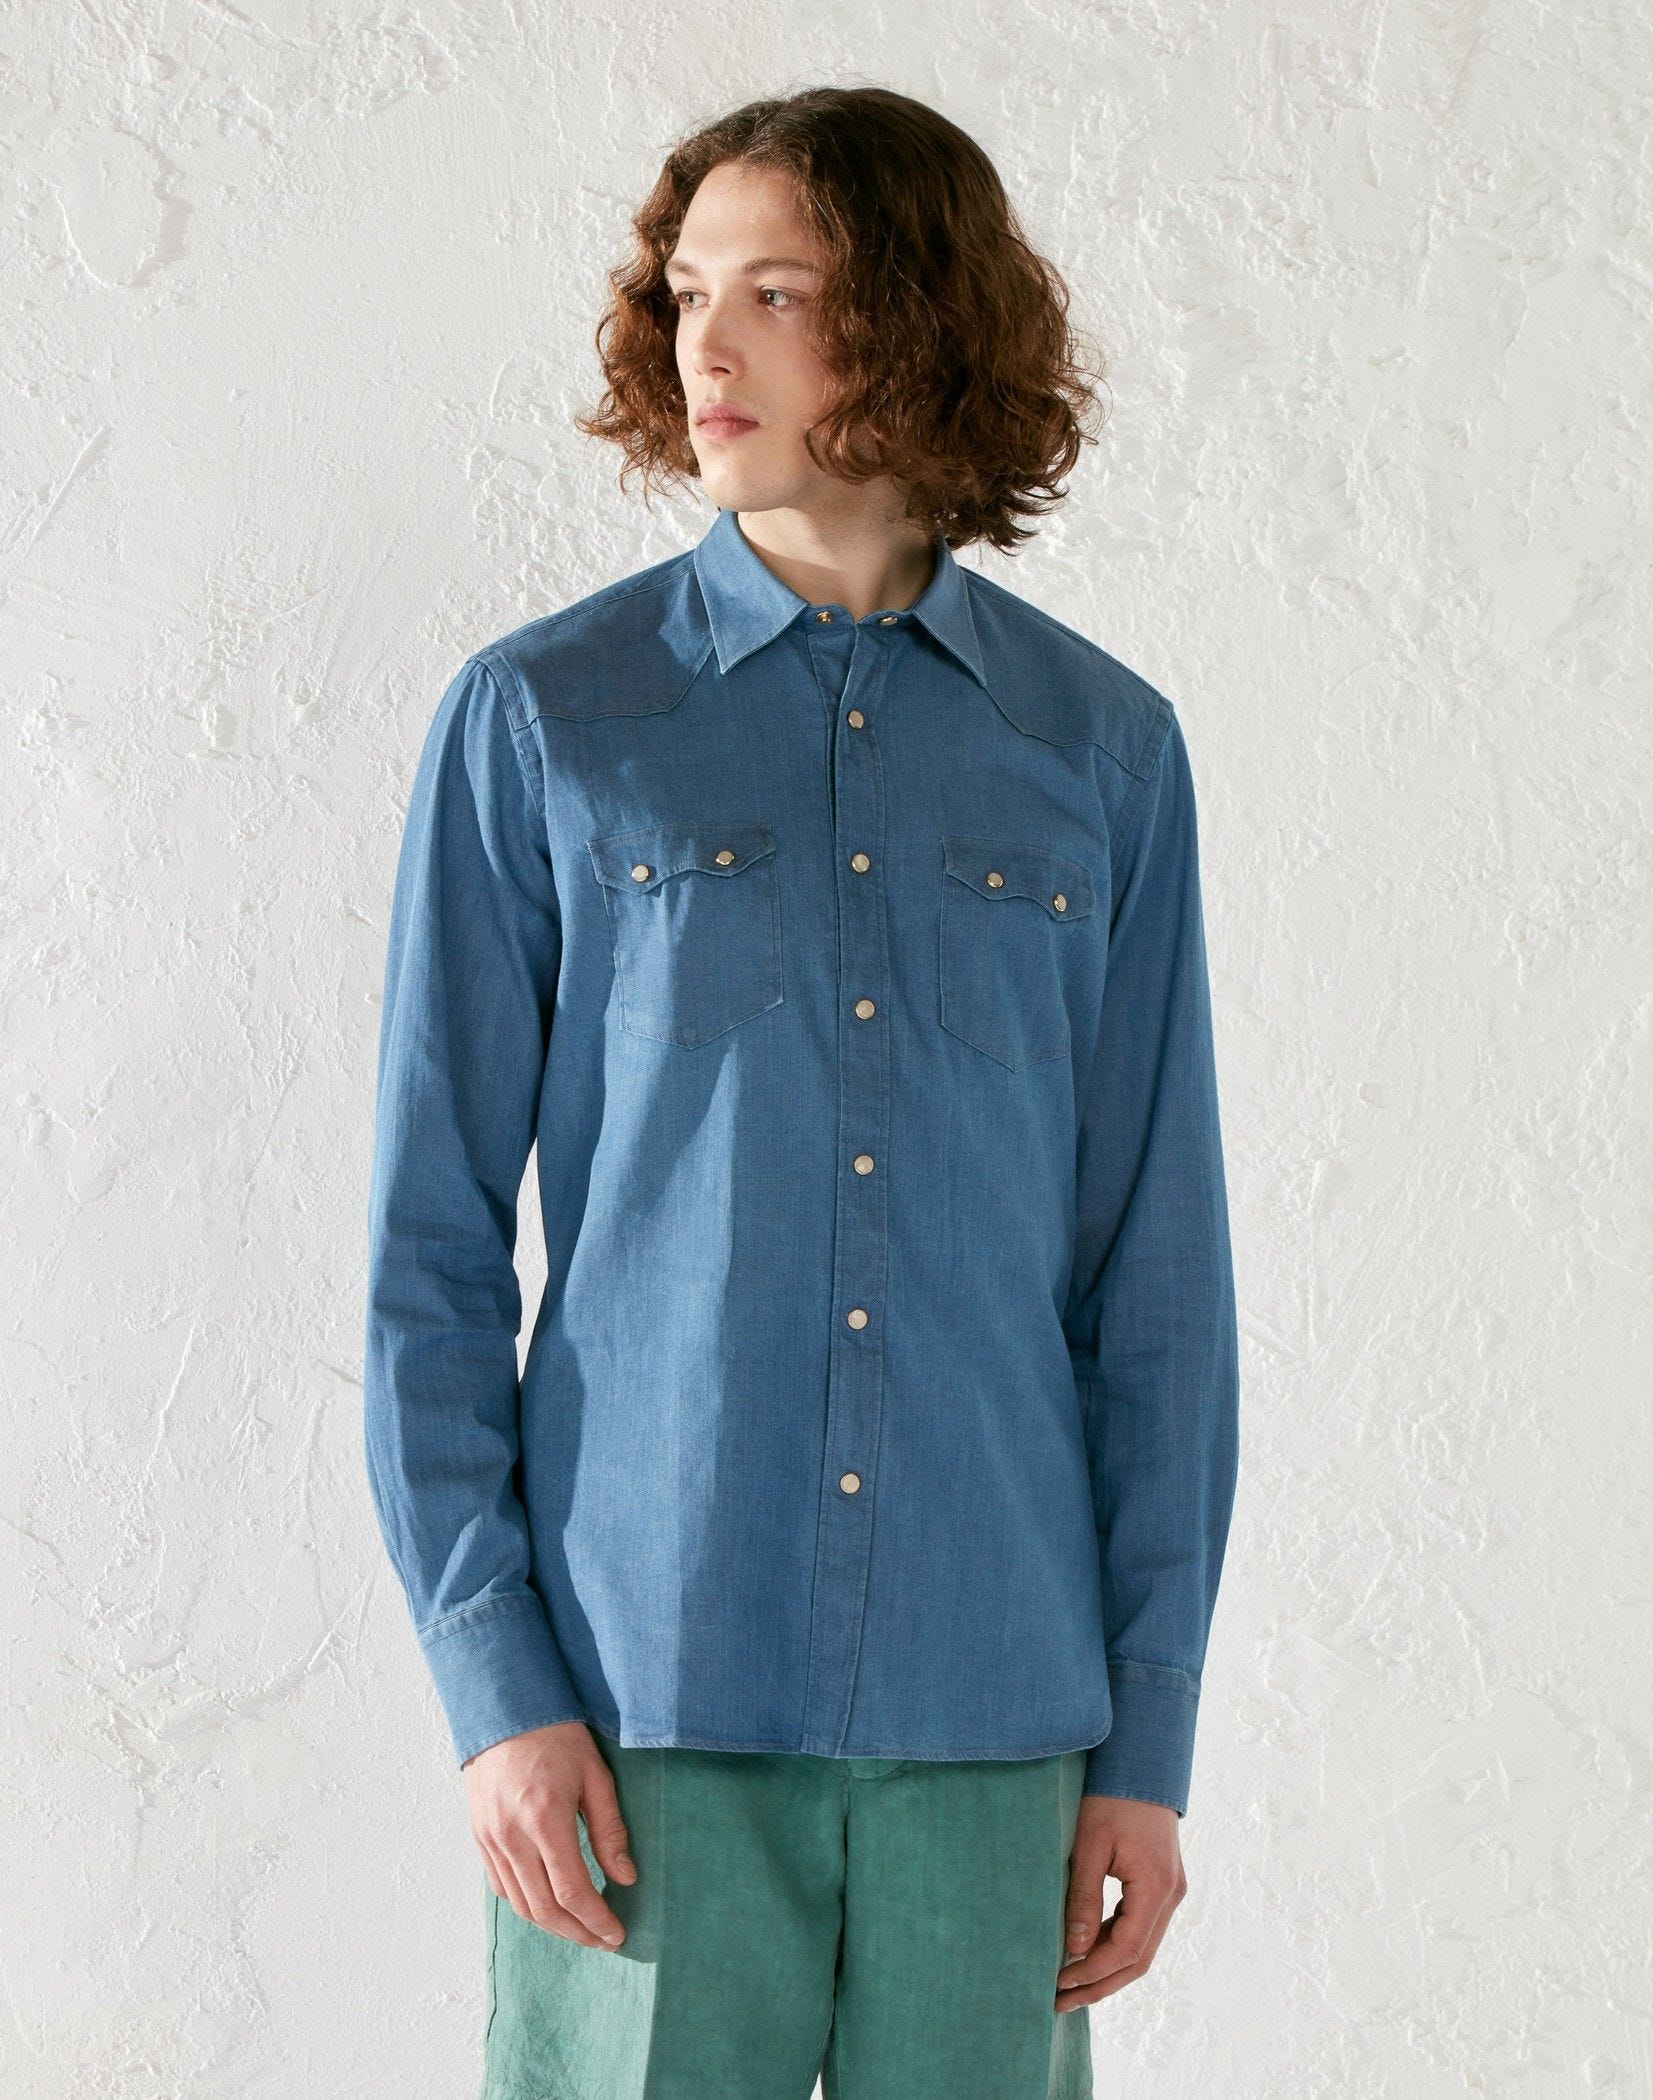 Indigo blue stretch cotton shirt